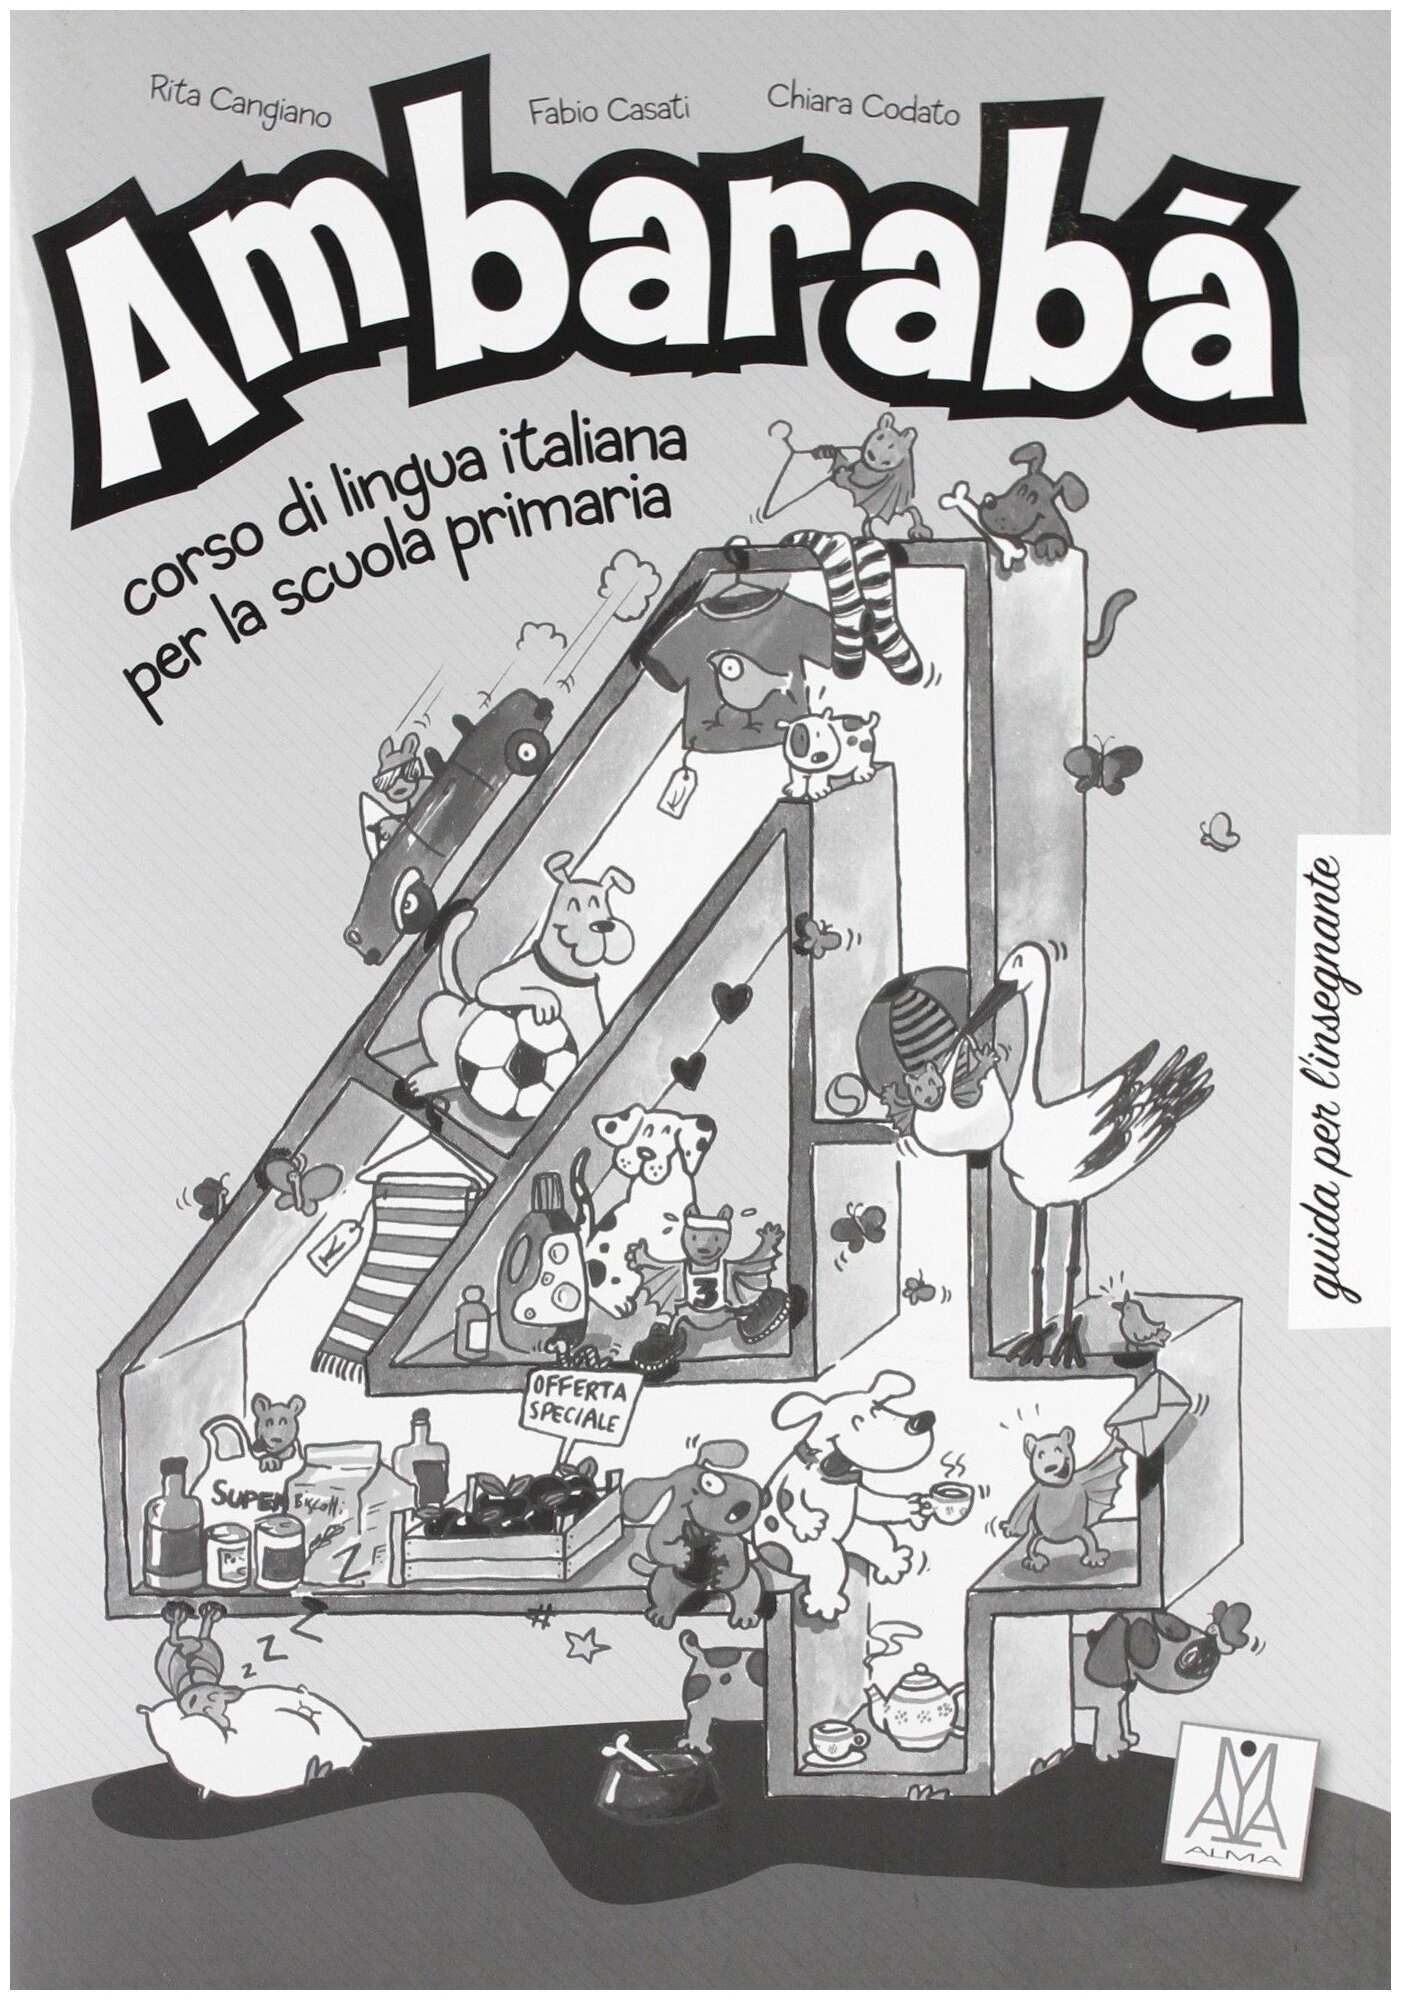 Ambaraba 4 Guida per l'insegnante, книга для учителя к учебнику по итальянскому языку для детей